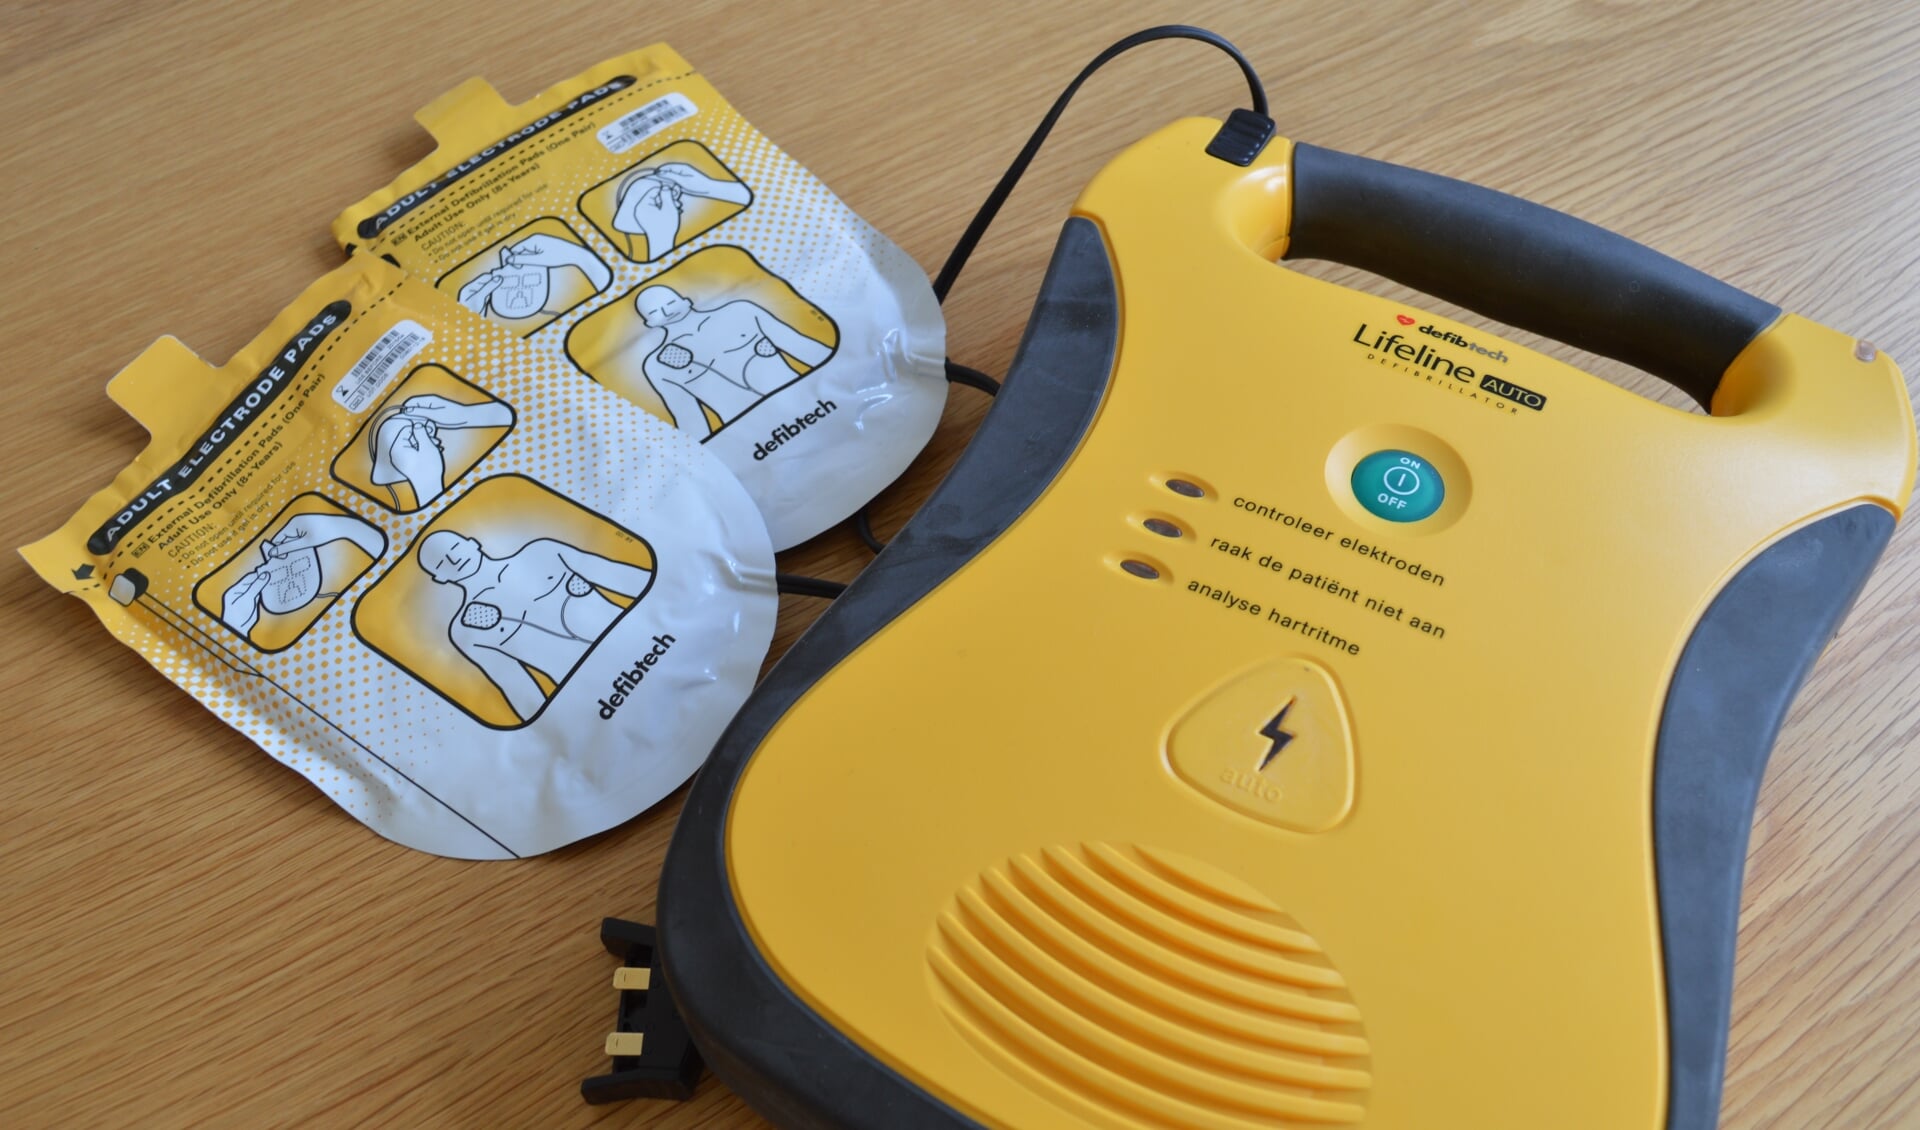 Voorbeeld van een AED.